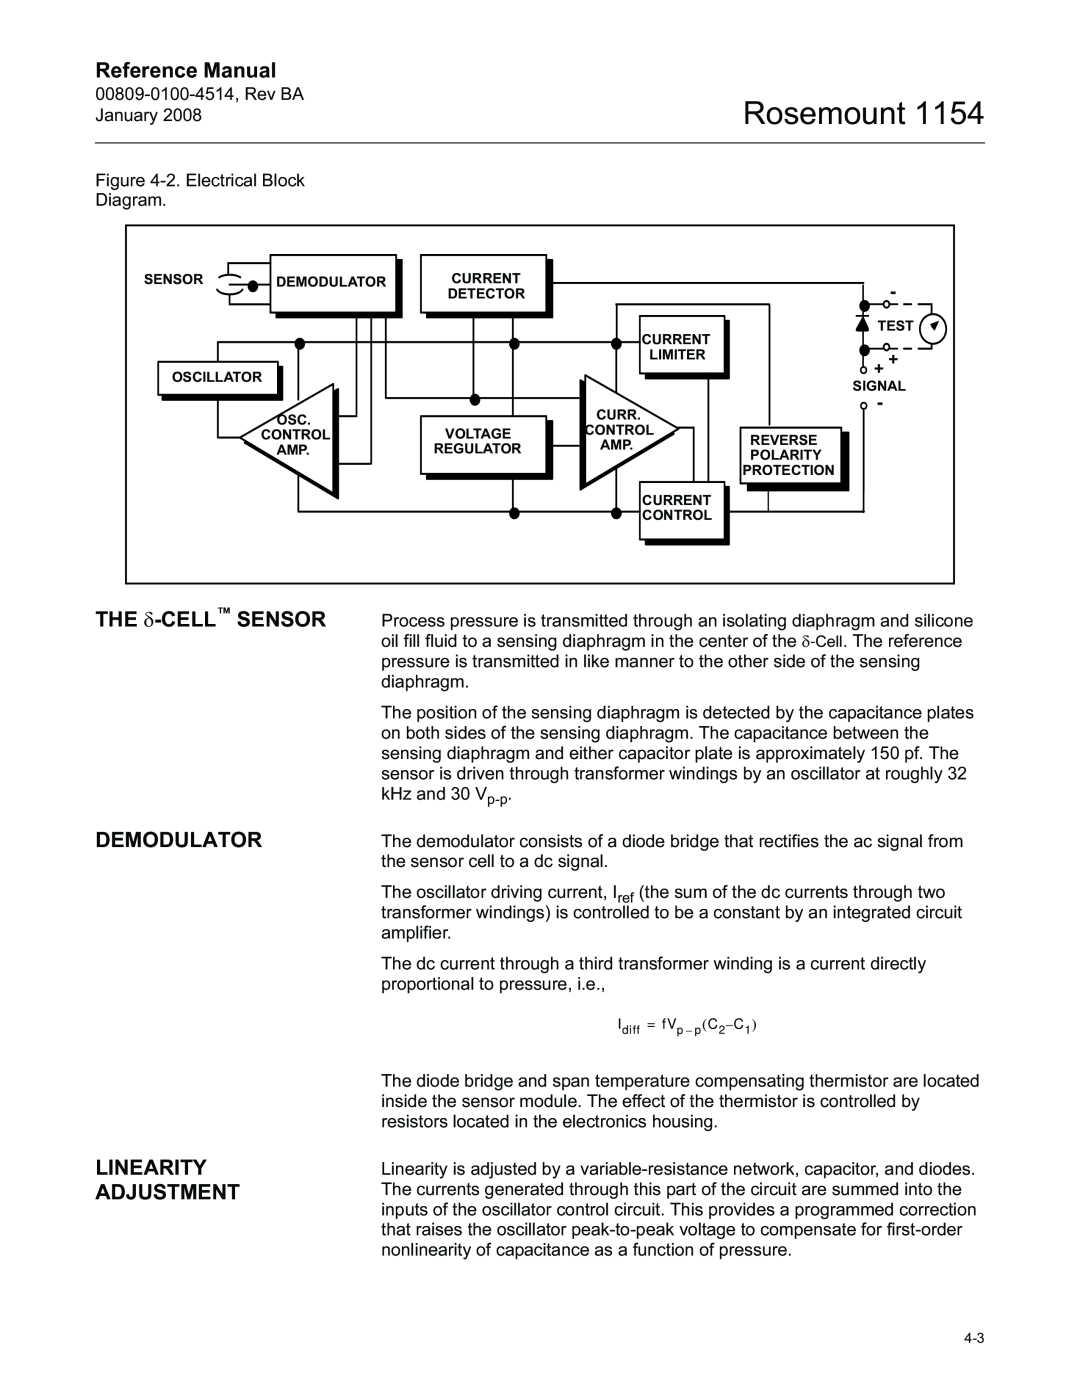 Emerson 1154, 00809-0100-4514 manual Demodulator, Linearity Adjustment, Rosemount, Reference Manual 